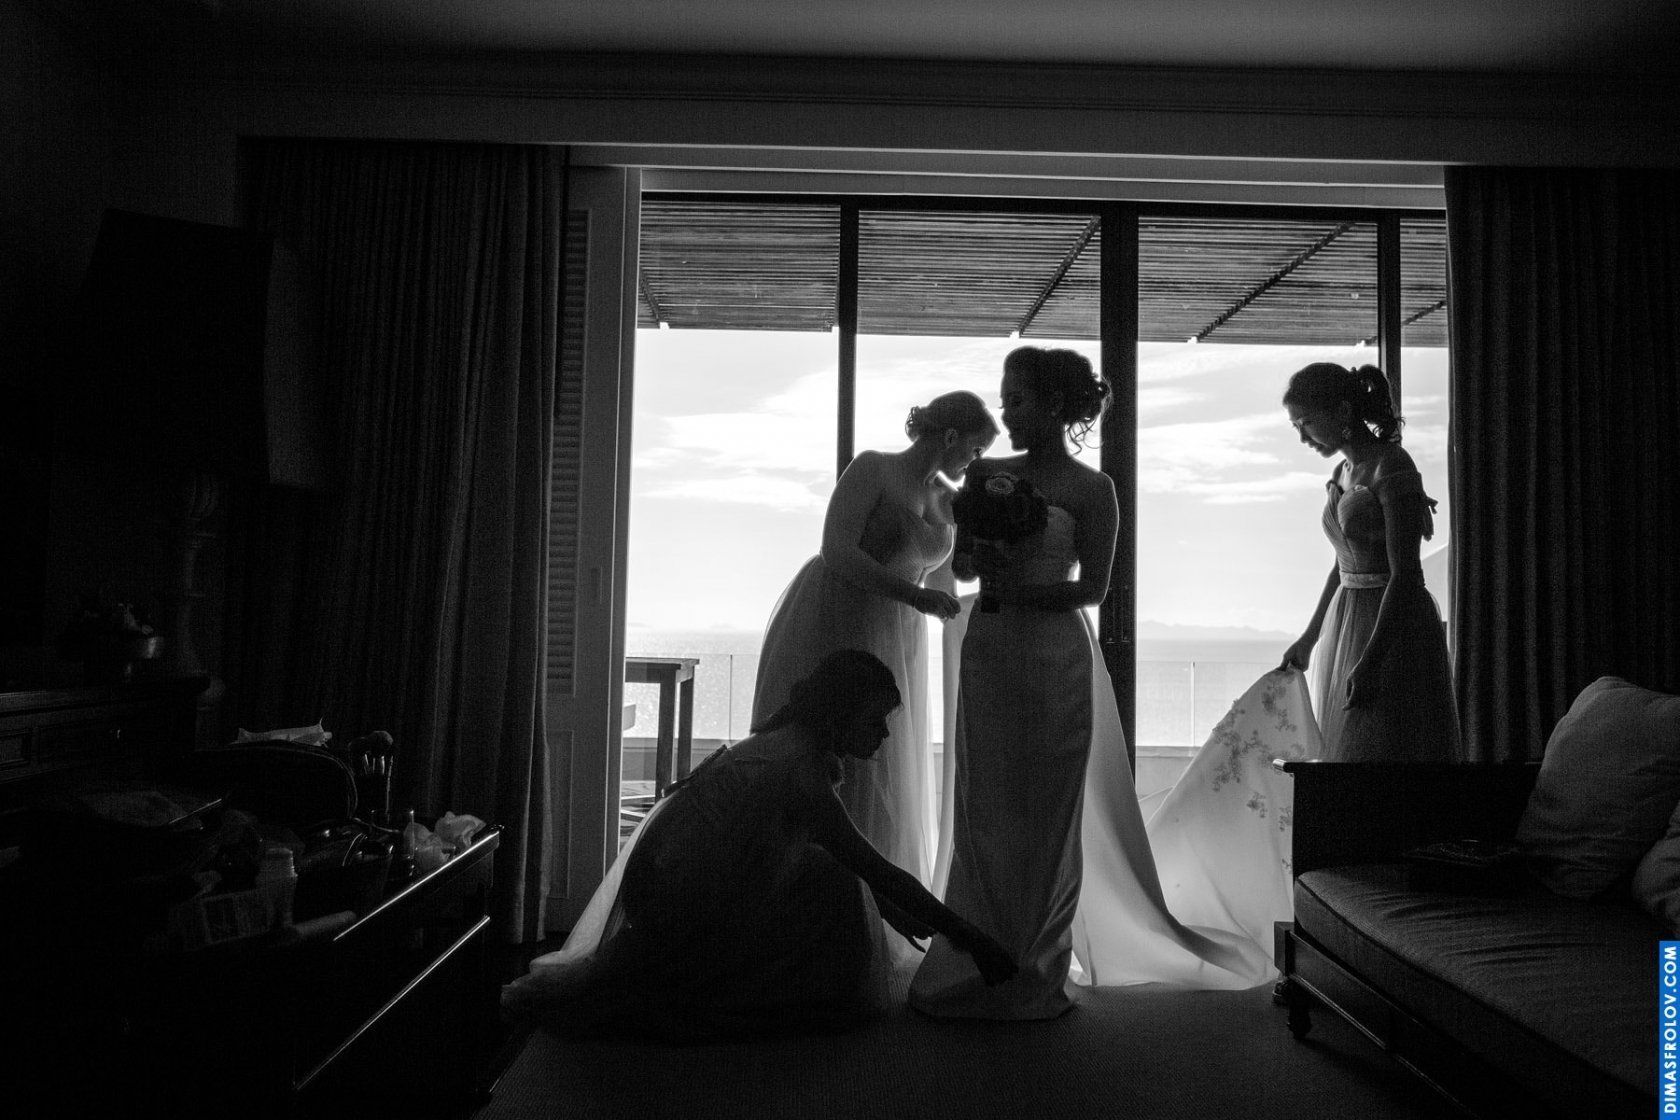 พิธีแต่งงาน ณ โรงแรมอินเตอร์คอนติเนนตัล เกาะสมุย - Eddy & Angela. บาทต่อภาพ 4894 (2023-05-04 03:44:55)